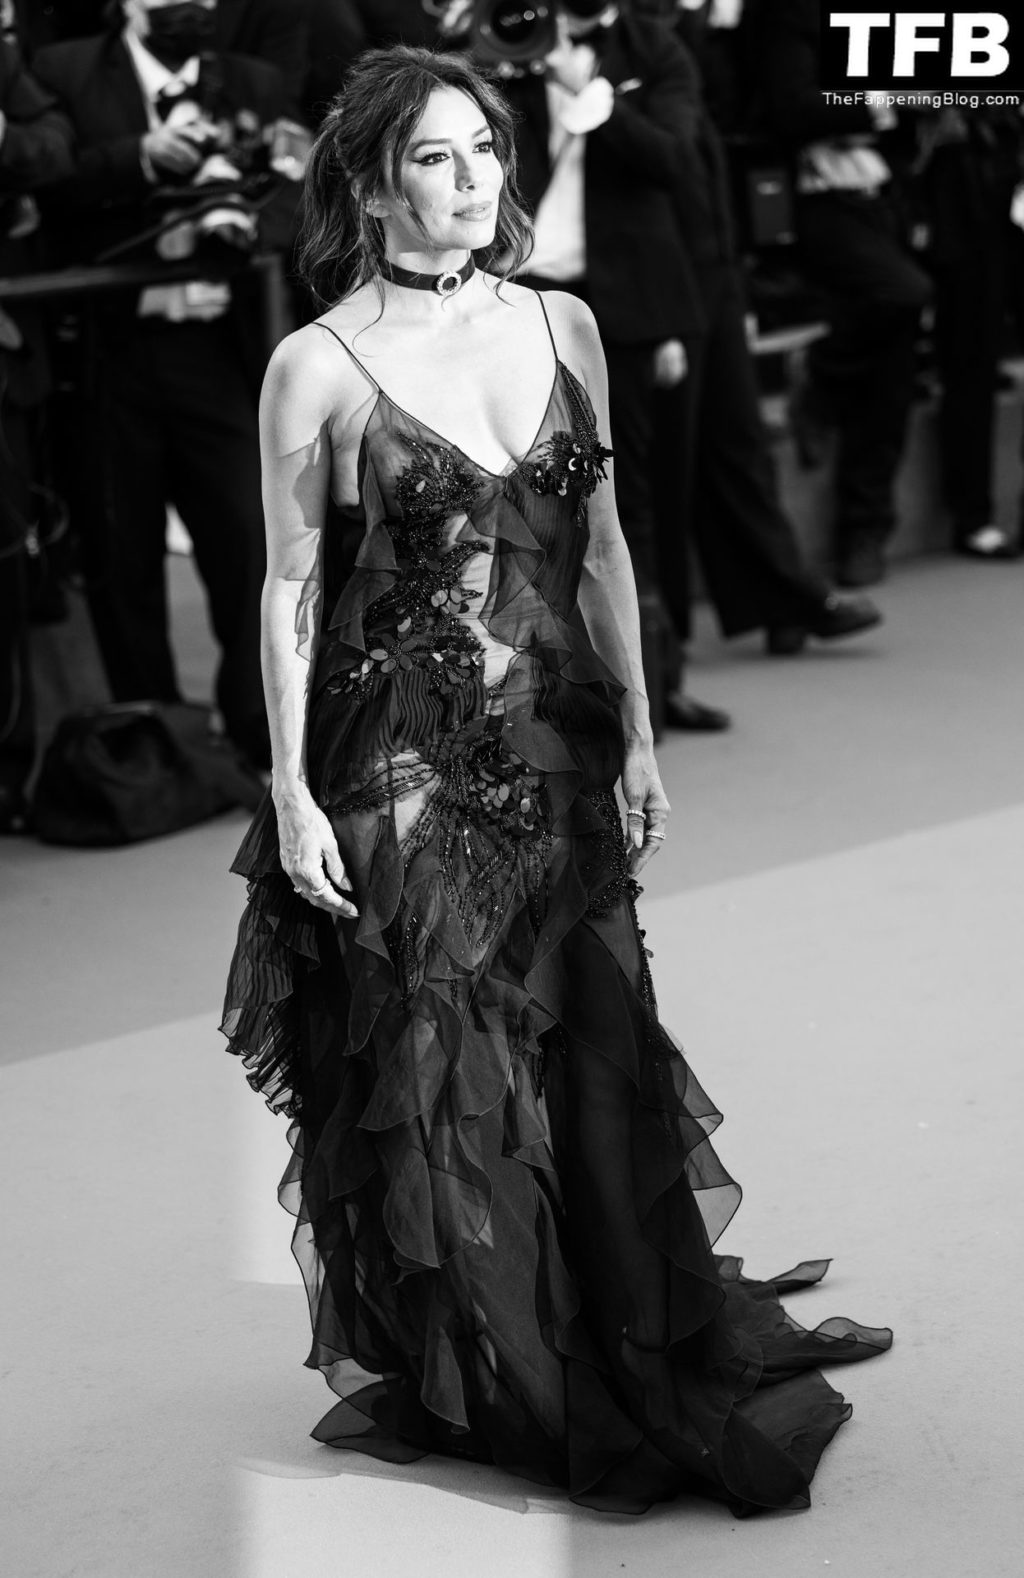 Eva Longoria Sexy The Fappening Blog 105 1024x1578 - Eva Longoria Looks Beautiful at the 75th Annual Cannes Film Festival (150 Photos)